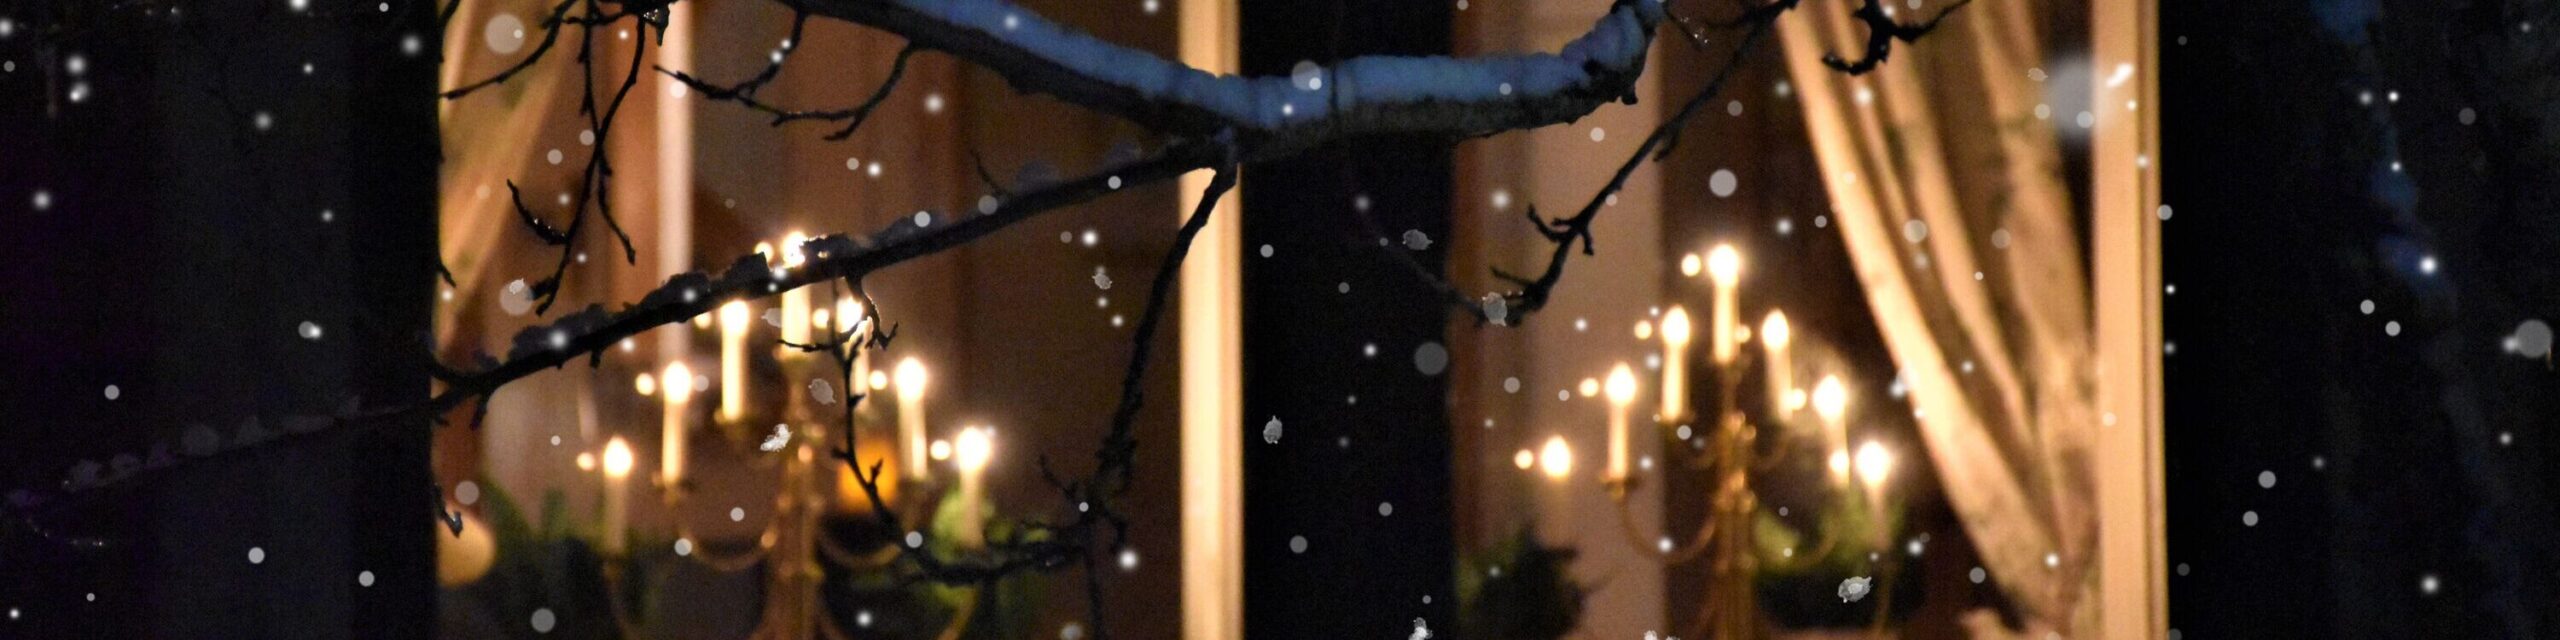 Ein Fenster mit Schneeflocken im Winter